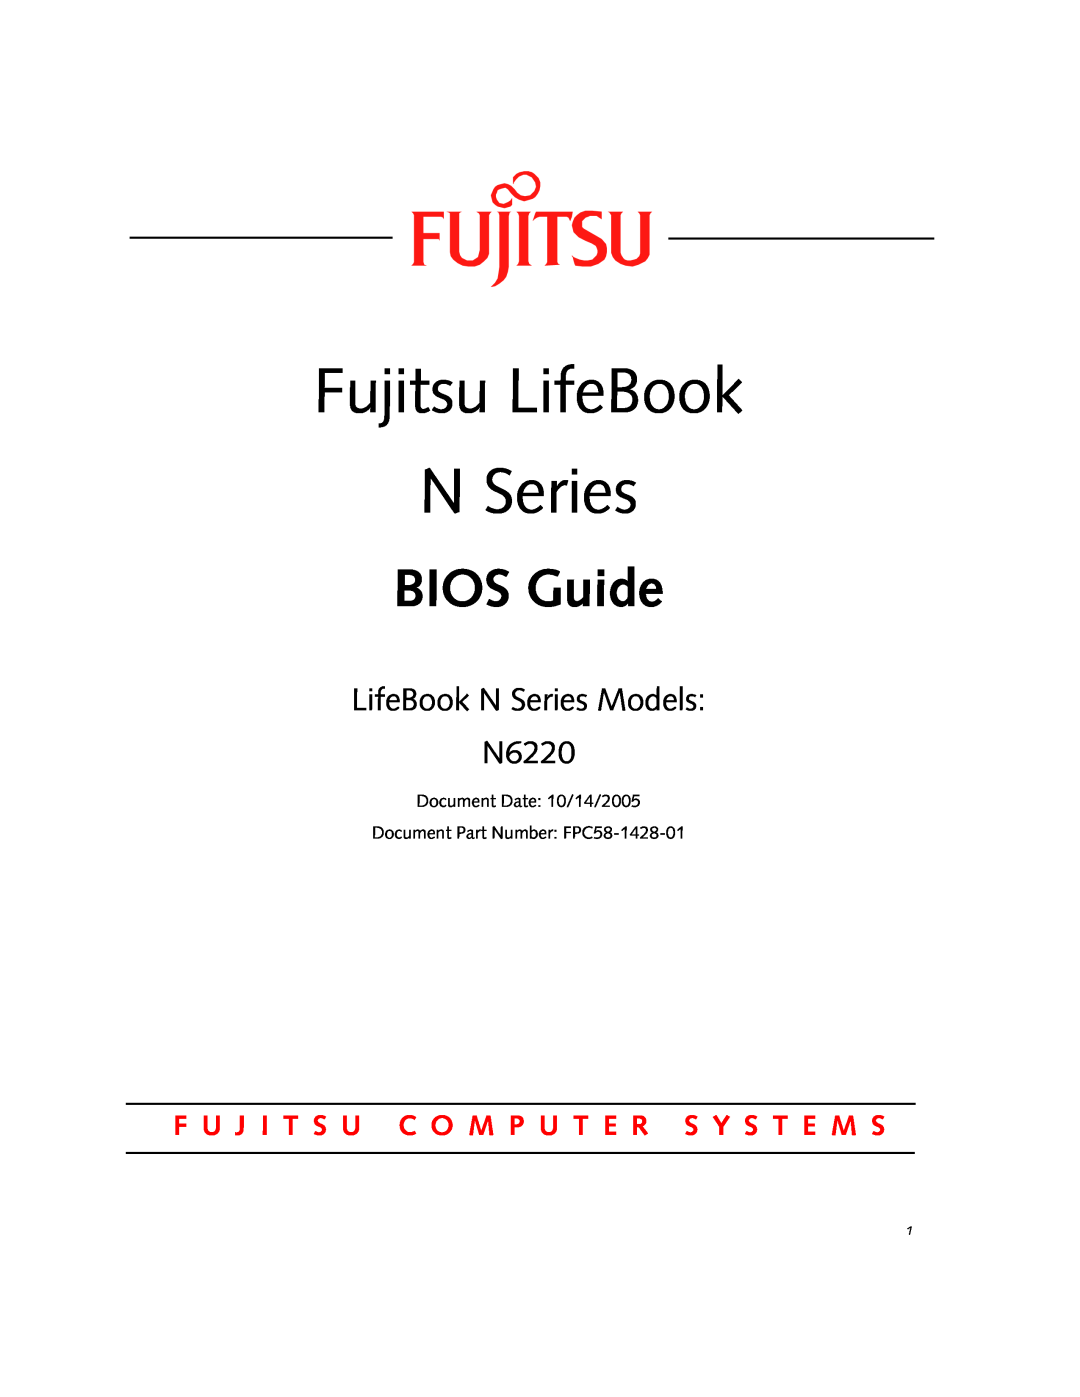 Fujitsu manual Fujitsu LifeBook N Series, BIOS Guide, LifeBook N Series Models N6220 